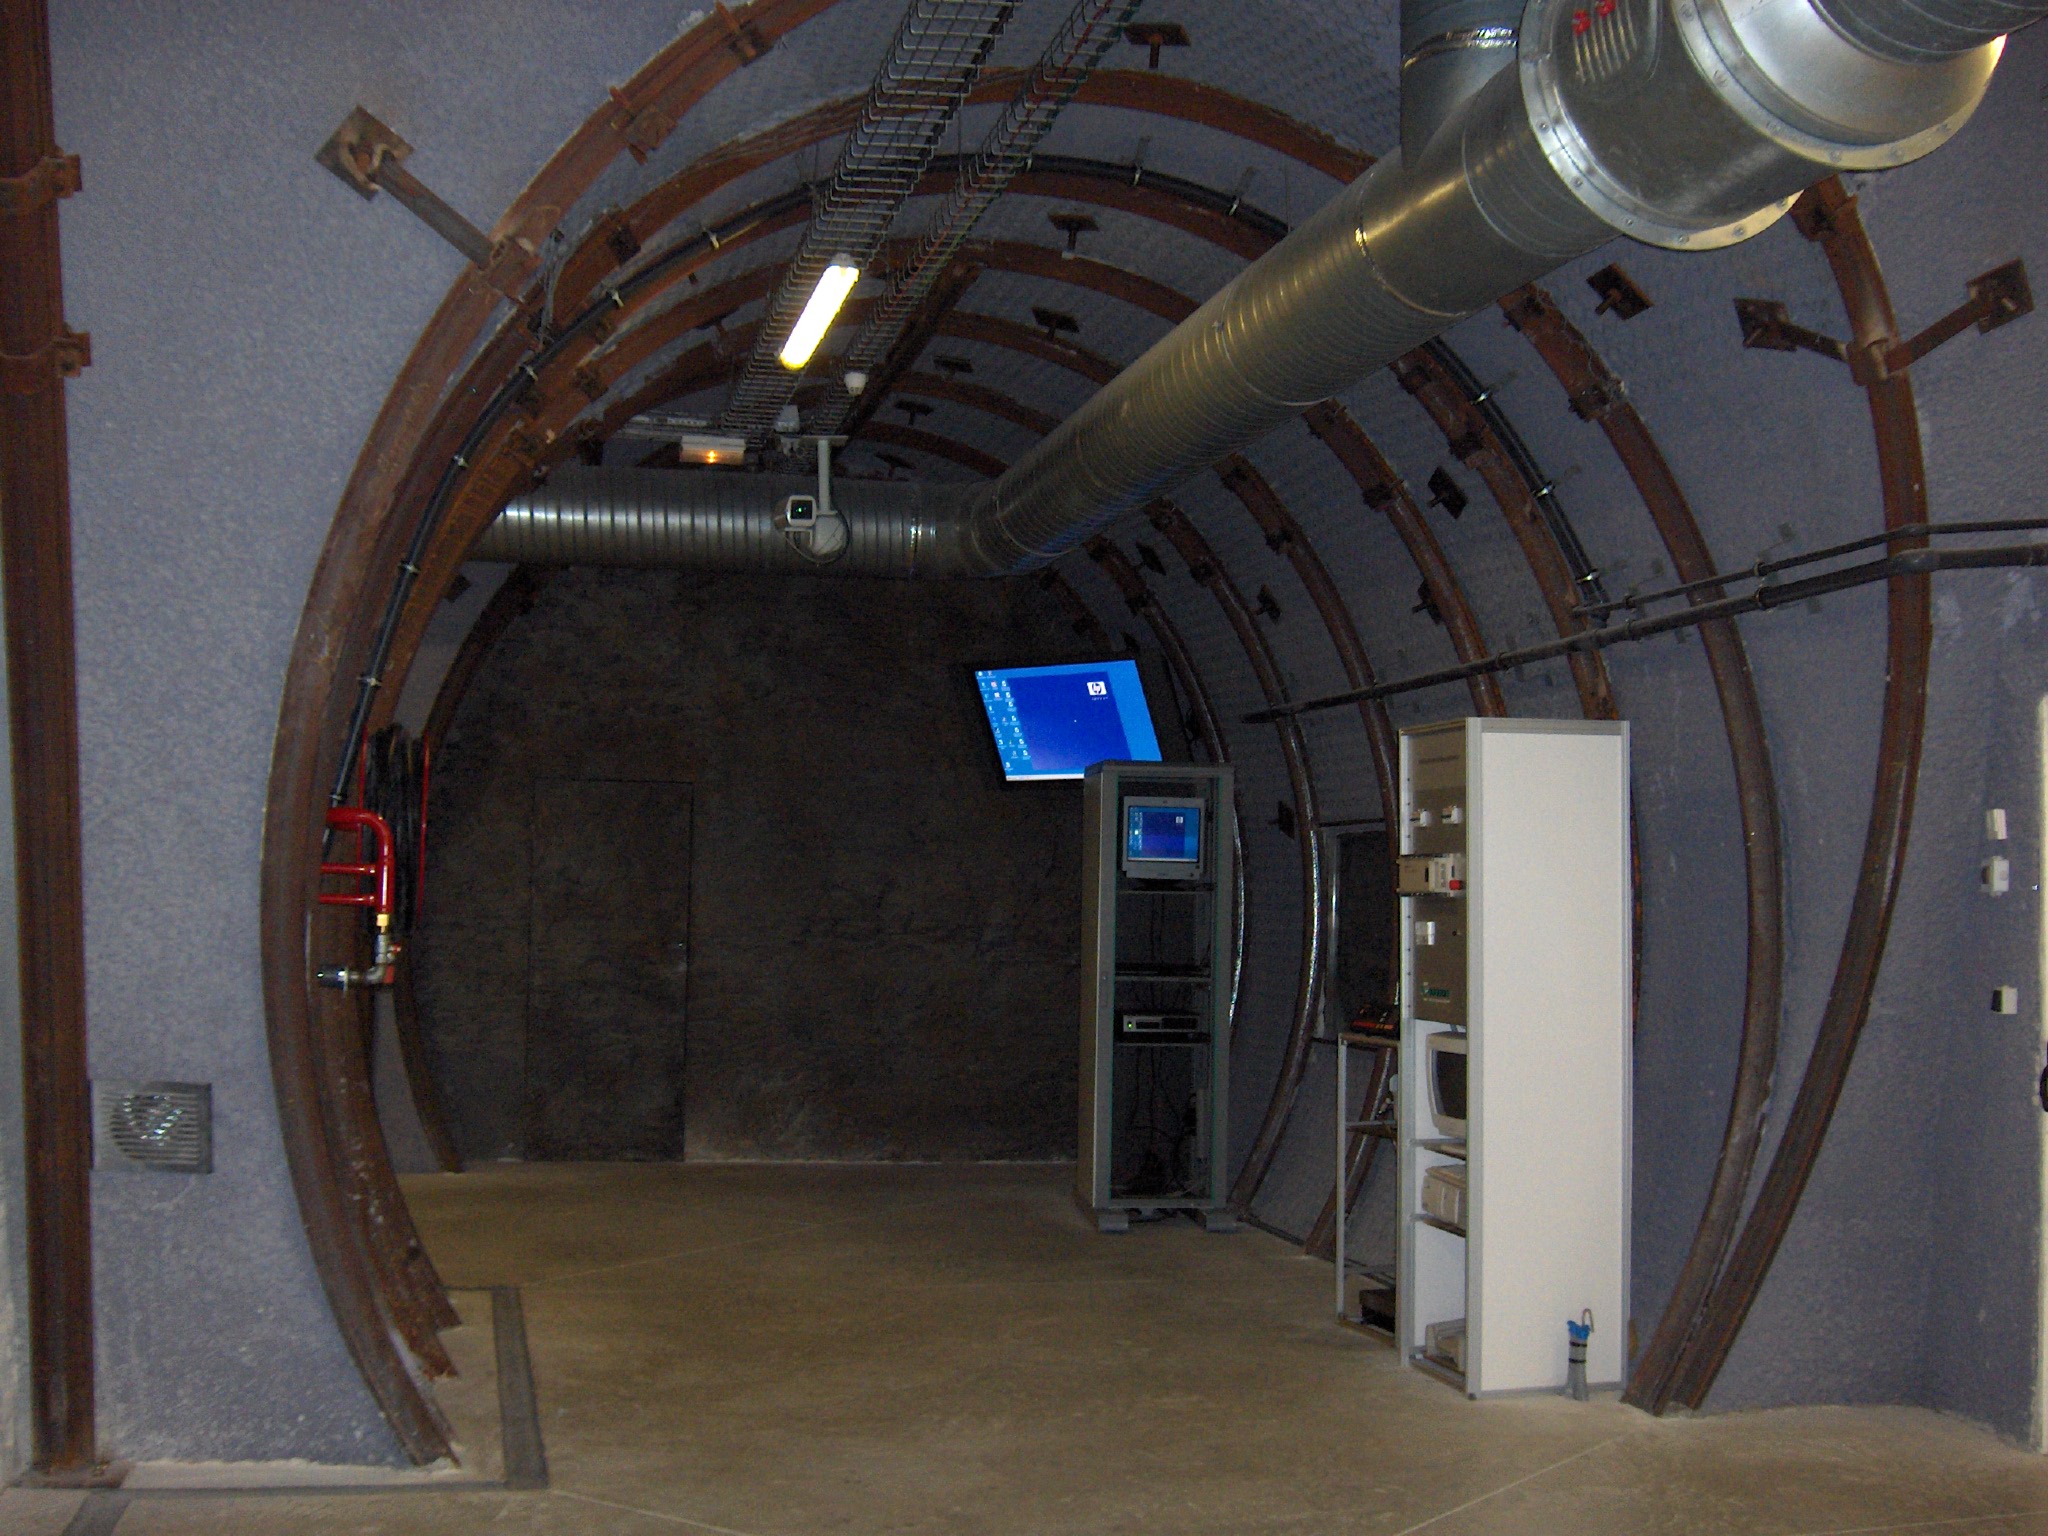 Le Laboratoire de Bure comprend aussi des installations en surface, où les visiteurs peuvent notamment venir observer cette maquette d’une galerie souterraine. © Ji-Elle, Wikimedia Commons